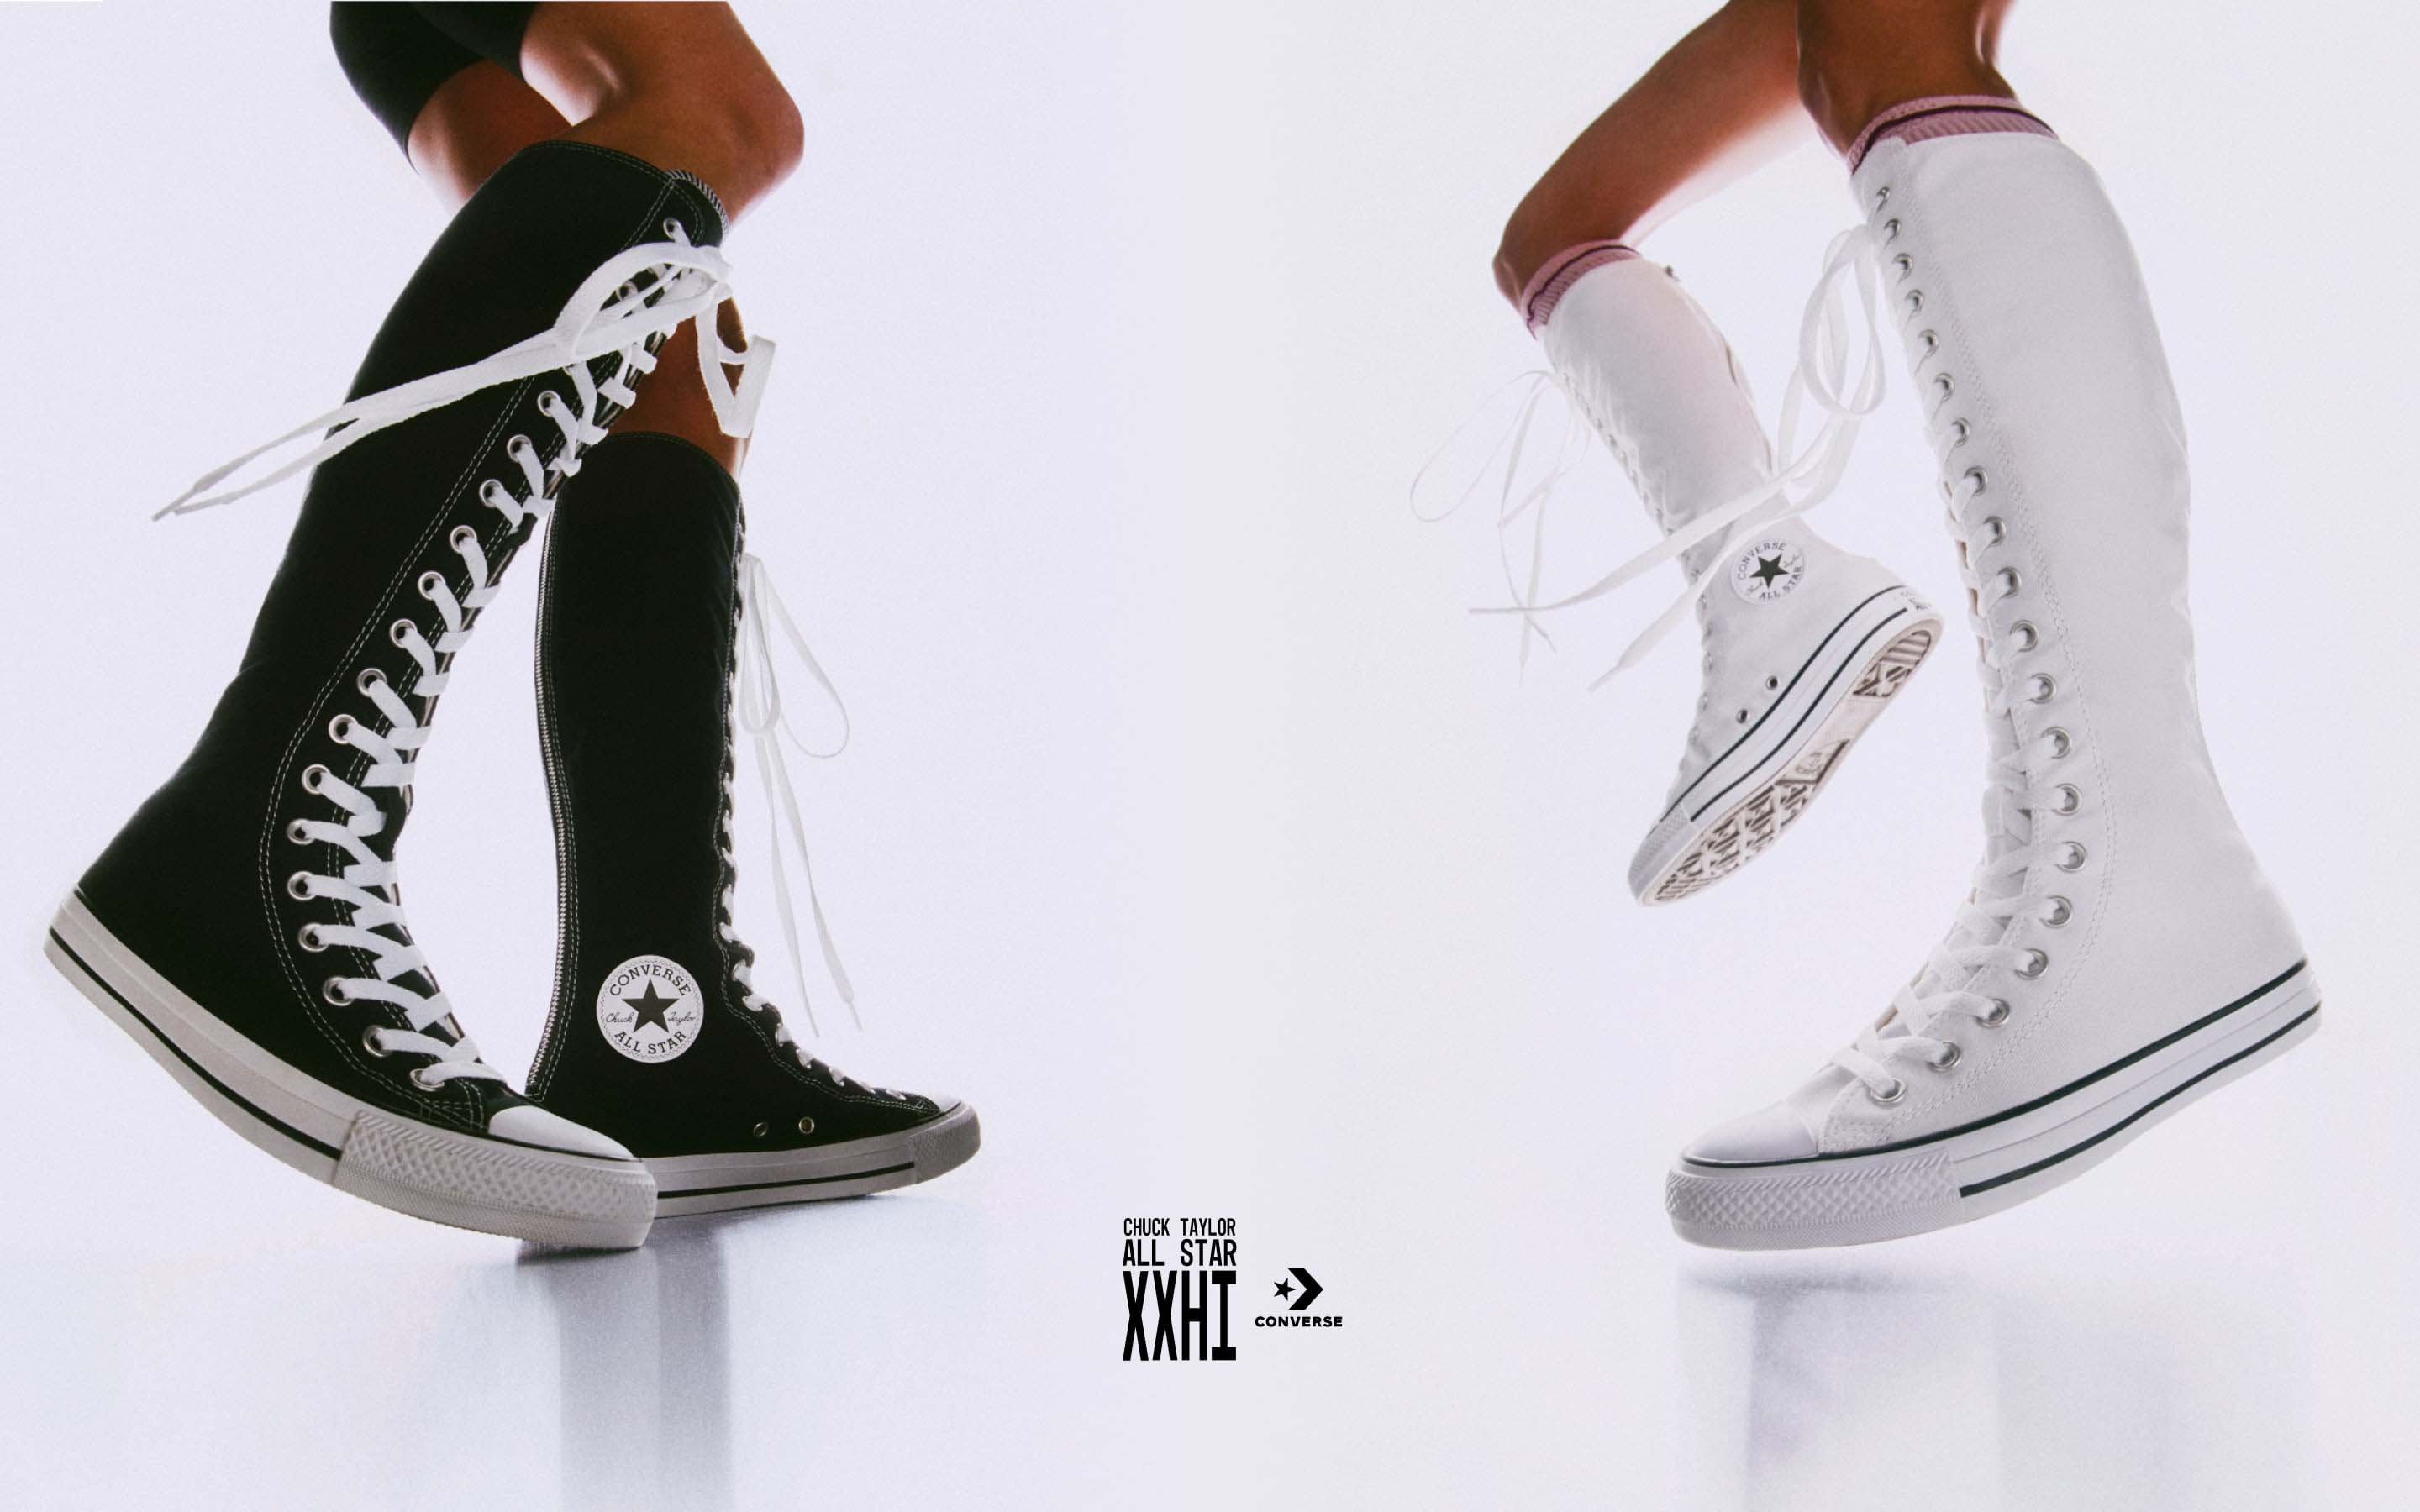 Knee High Converse Chuck Taylor All Star XXHi Femme Lacets et Zip Blanc/Ivoire naturel/Noir